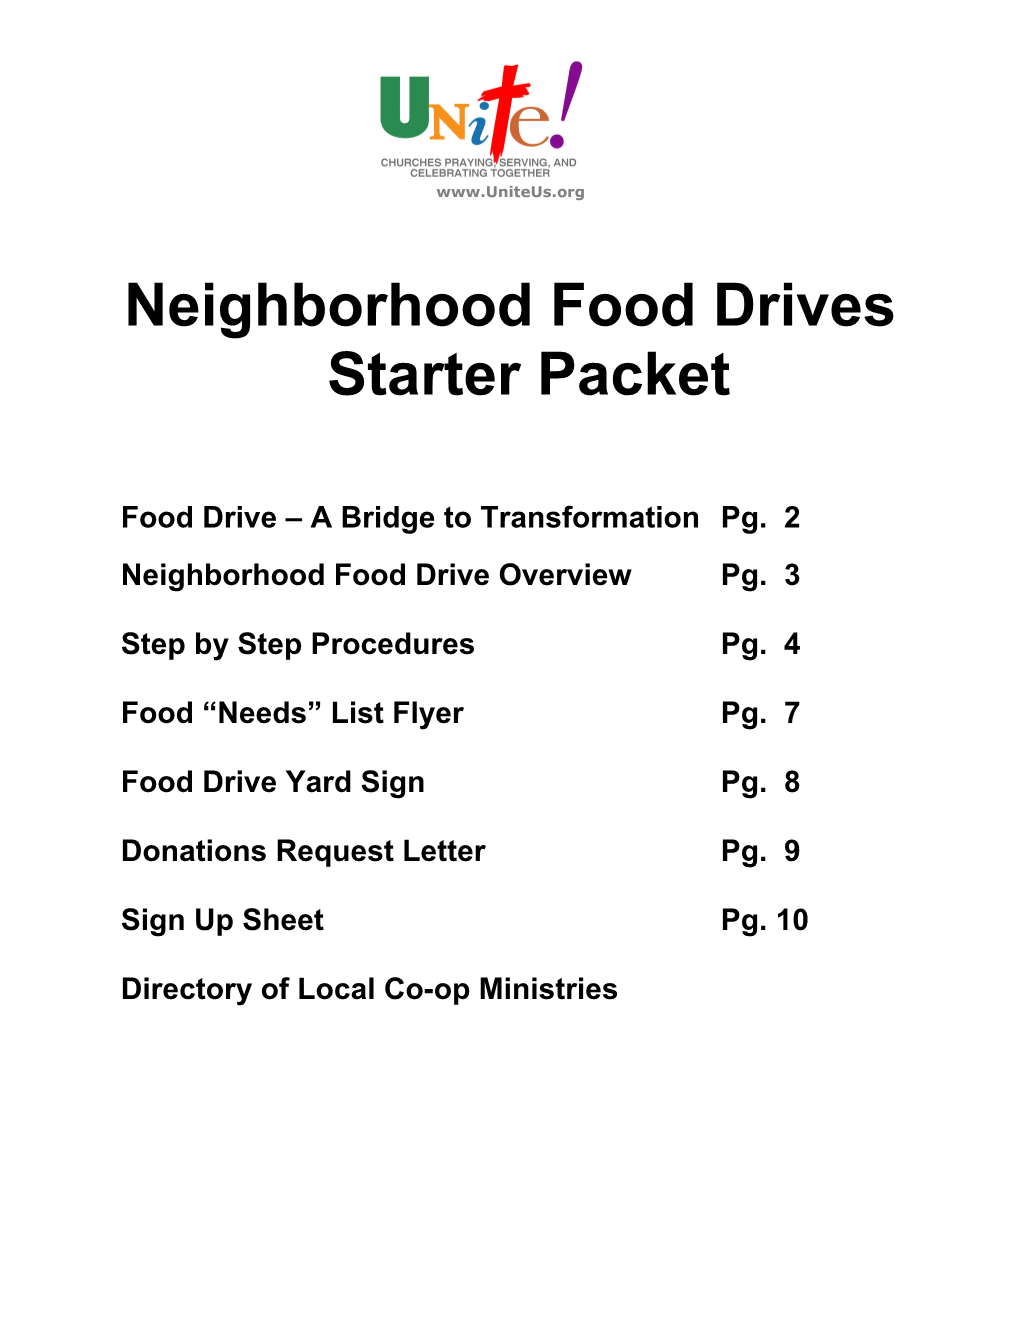 Neighborhood Food Drive Procedure